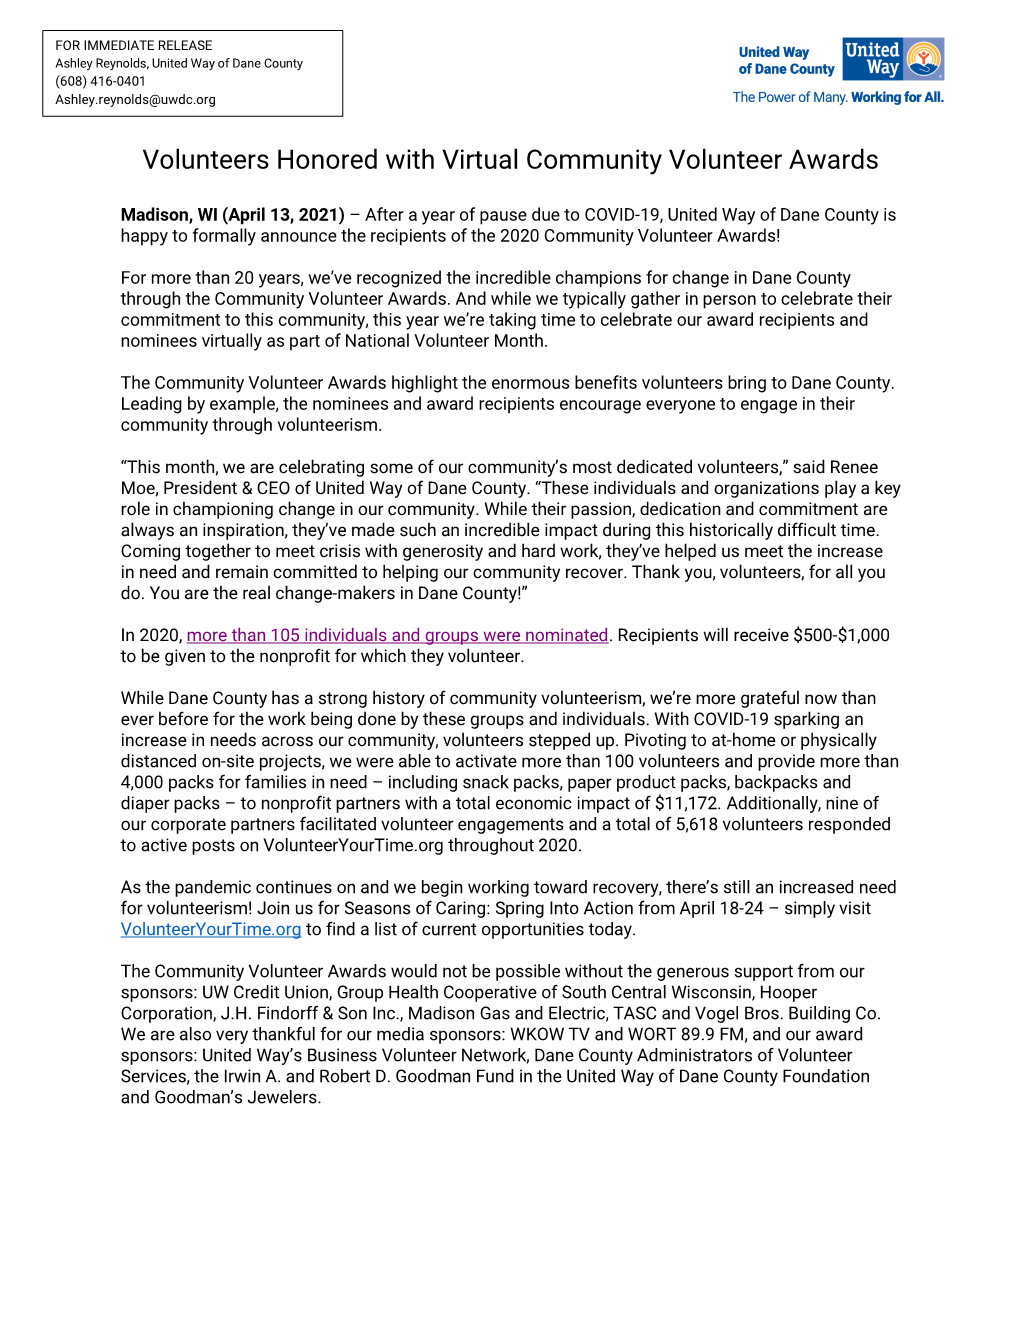 Volunteers Honored with Virtual Community Volunteer Awards